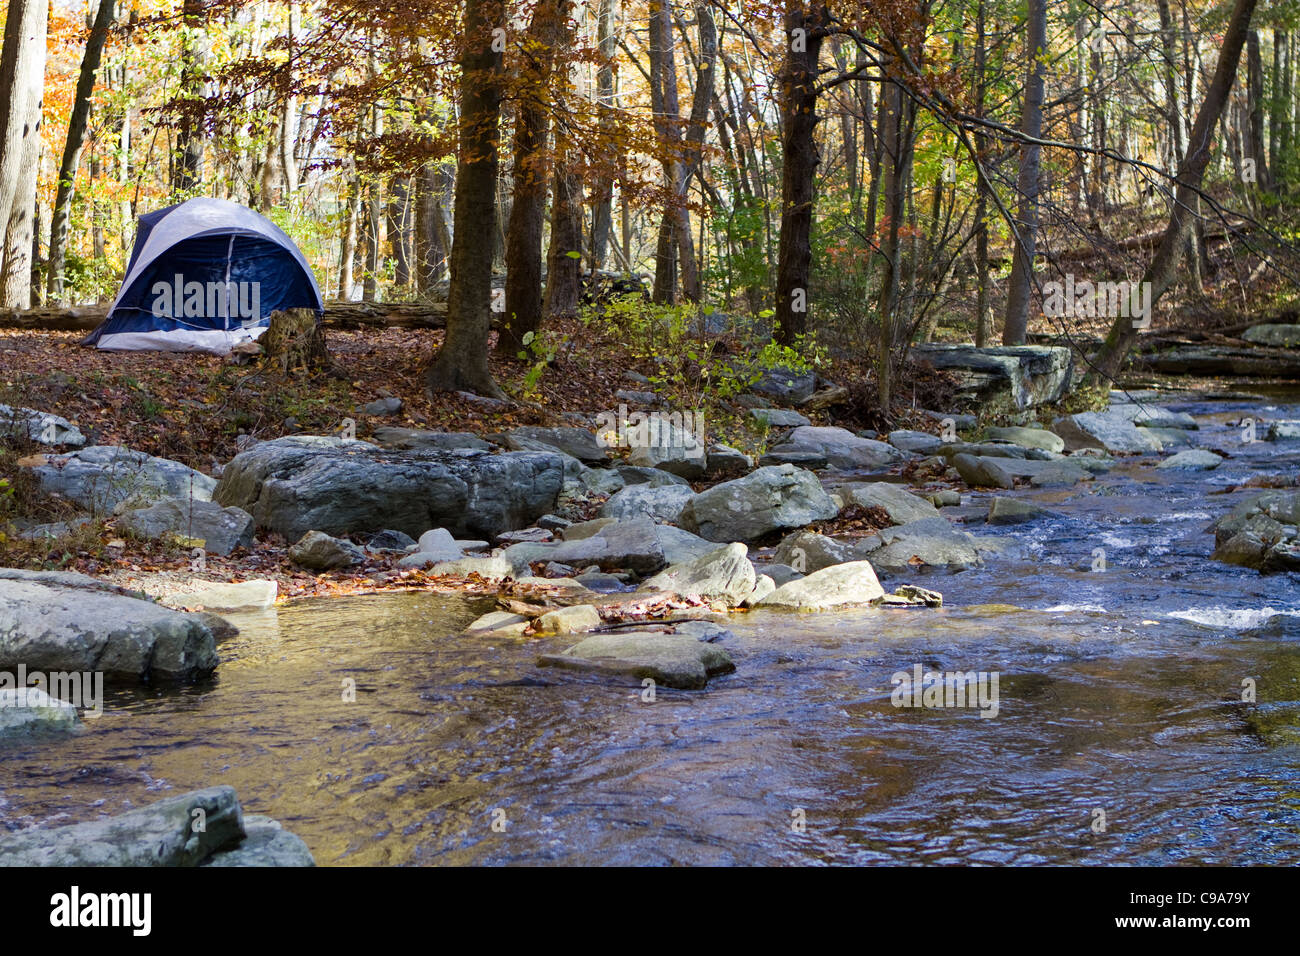 Kleines camping Zelt ist von einem Gebirgsbach in den Wäldern im Herbst mit Herbstlaub aufgeschlagen. Stockfoto